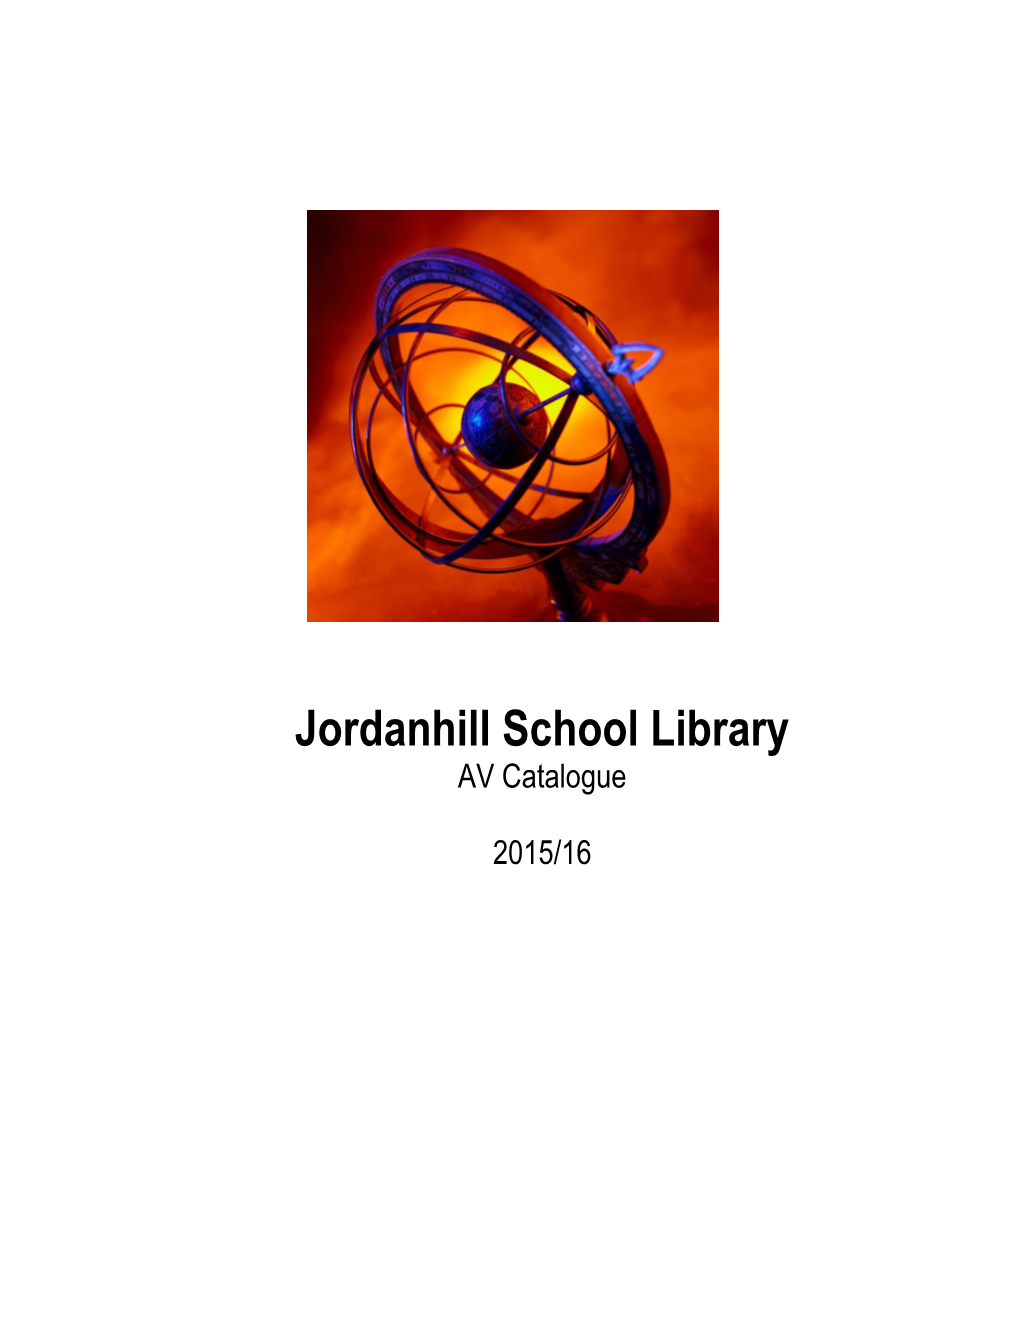 Jordanhill School Library AV Catalogue